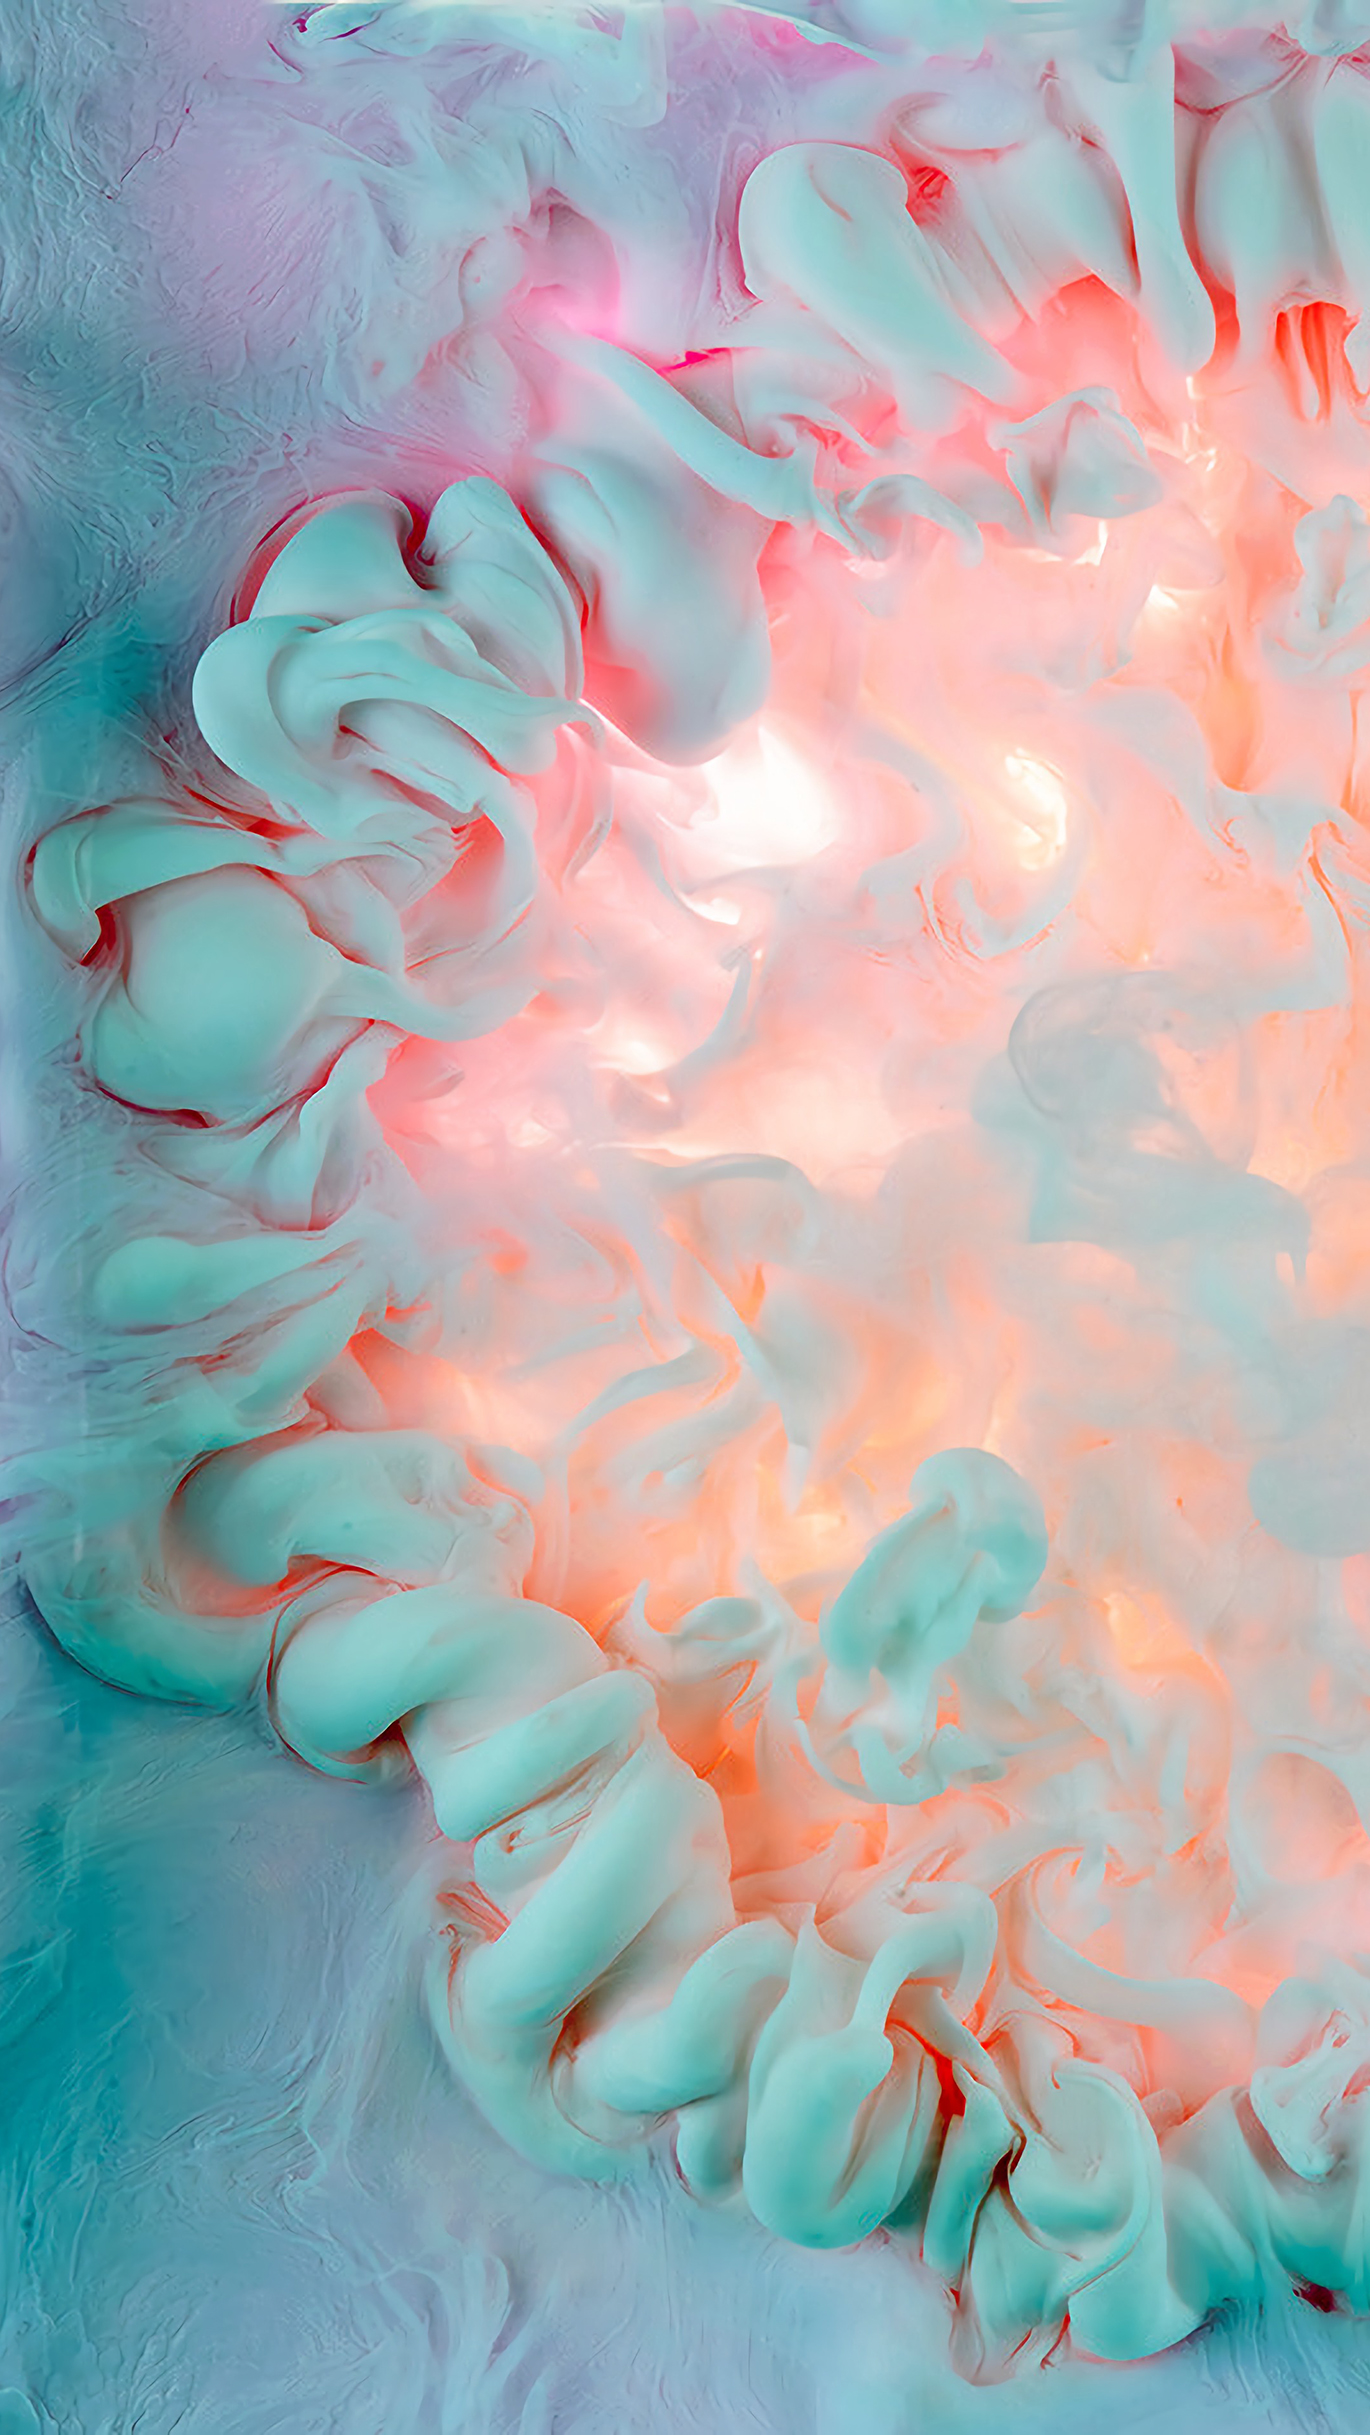 彩色漩涡柔和创意烟雾摄影烟雾壁纸(ˉ ˉ)